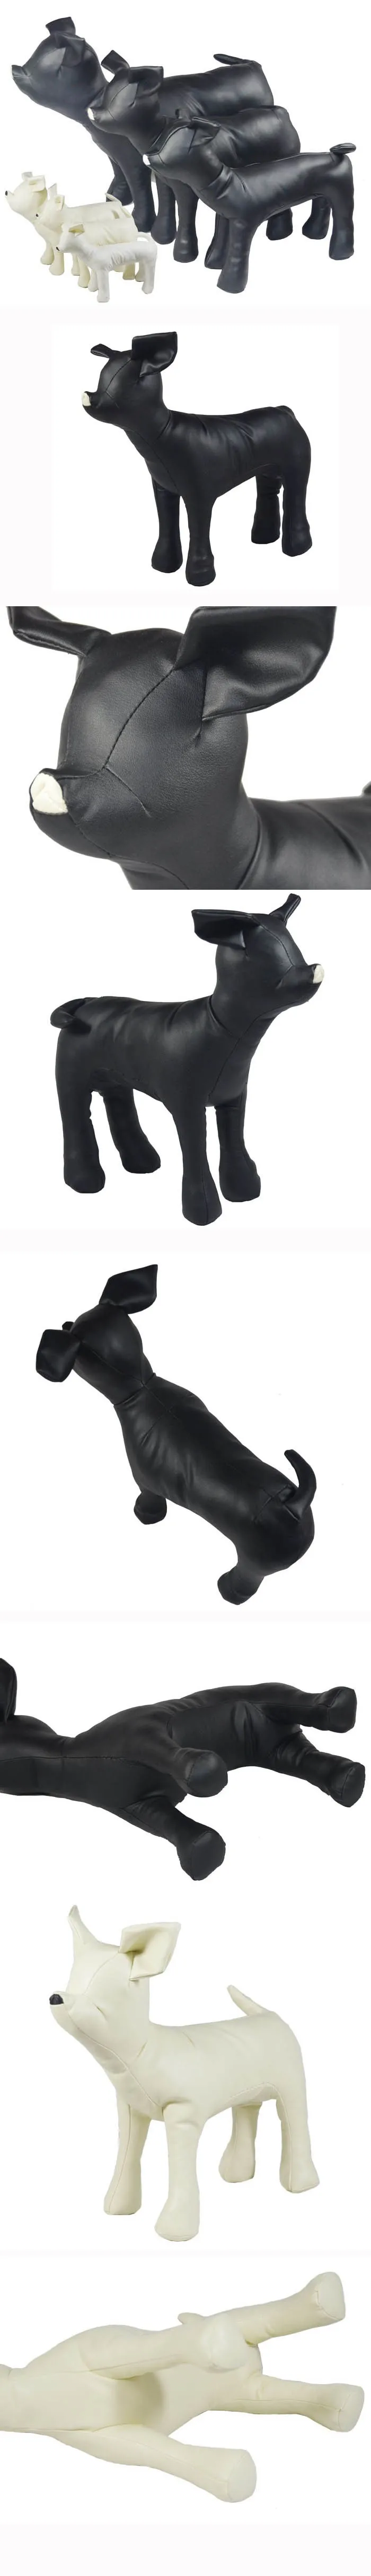 Новый милый Новый черный/белый ПВХ кожа собака торсы собак модели собак Манекены S/M/L 3 шт. = 1 компл